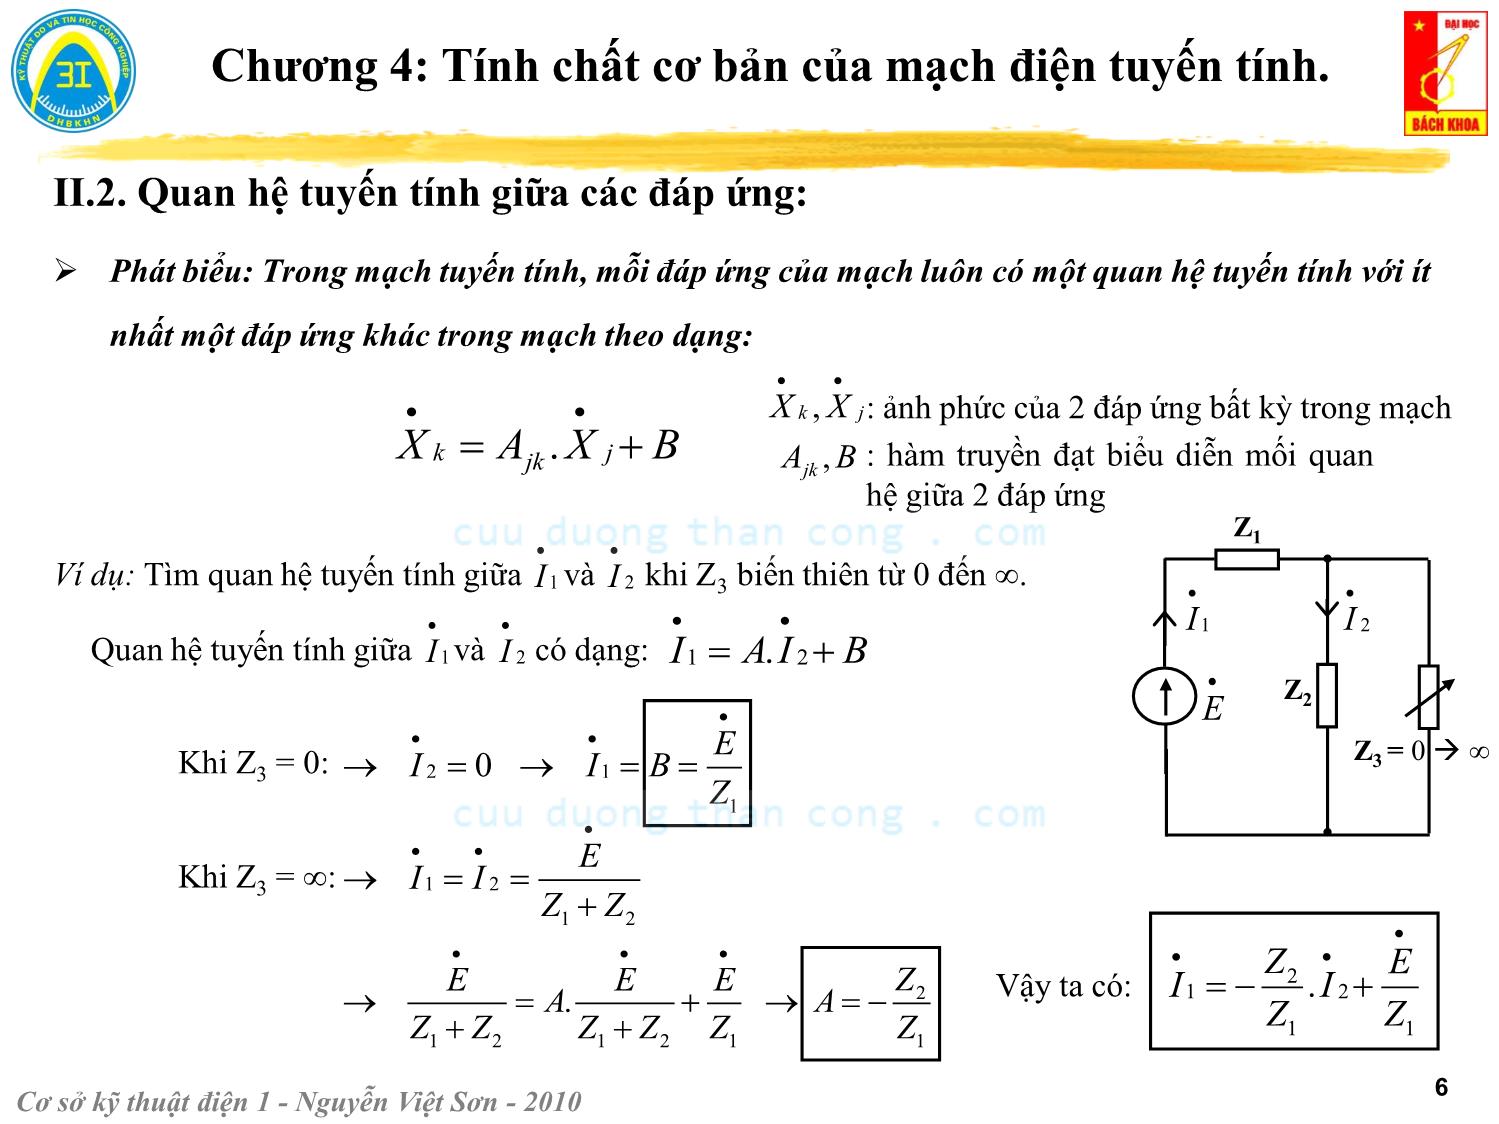 Bài giảng Kỹ thuật điện 1 - Chương 4: Tính chất cơ bản của mạch điện tuyến tính - Nguyễn Việt Sơn trang 6